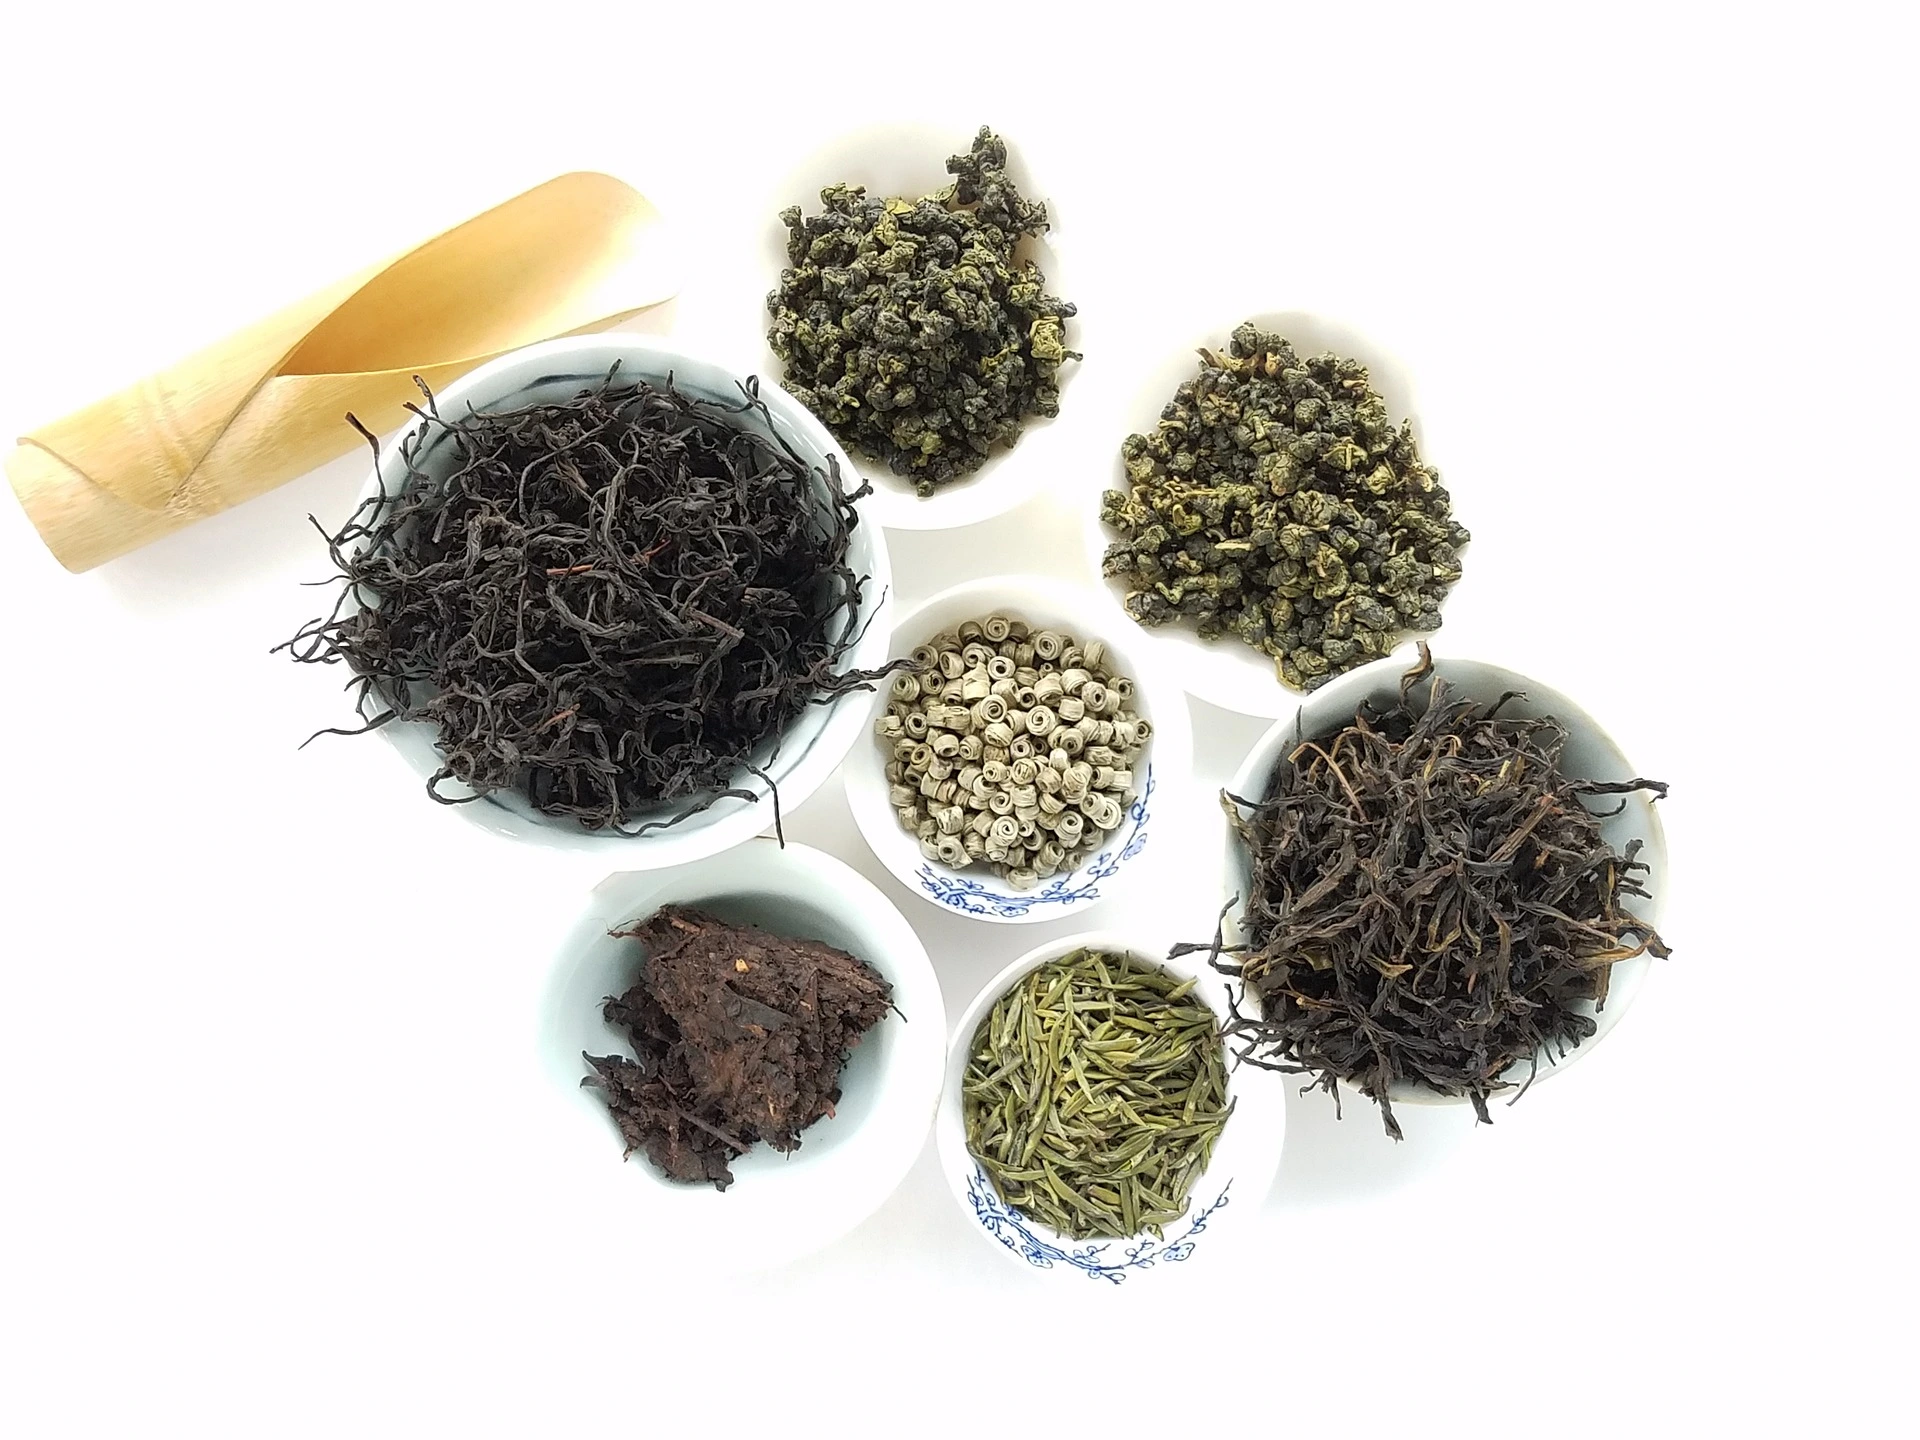 أنواع مختلفة من أوعية الشاي على خلفية بيضاء ، بما في ذلك الشاي الأخضر والأسود.